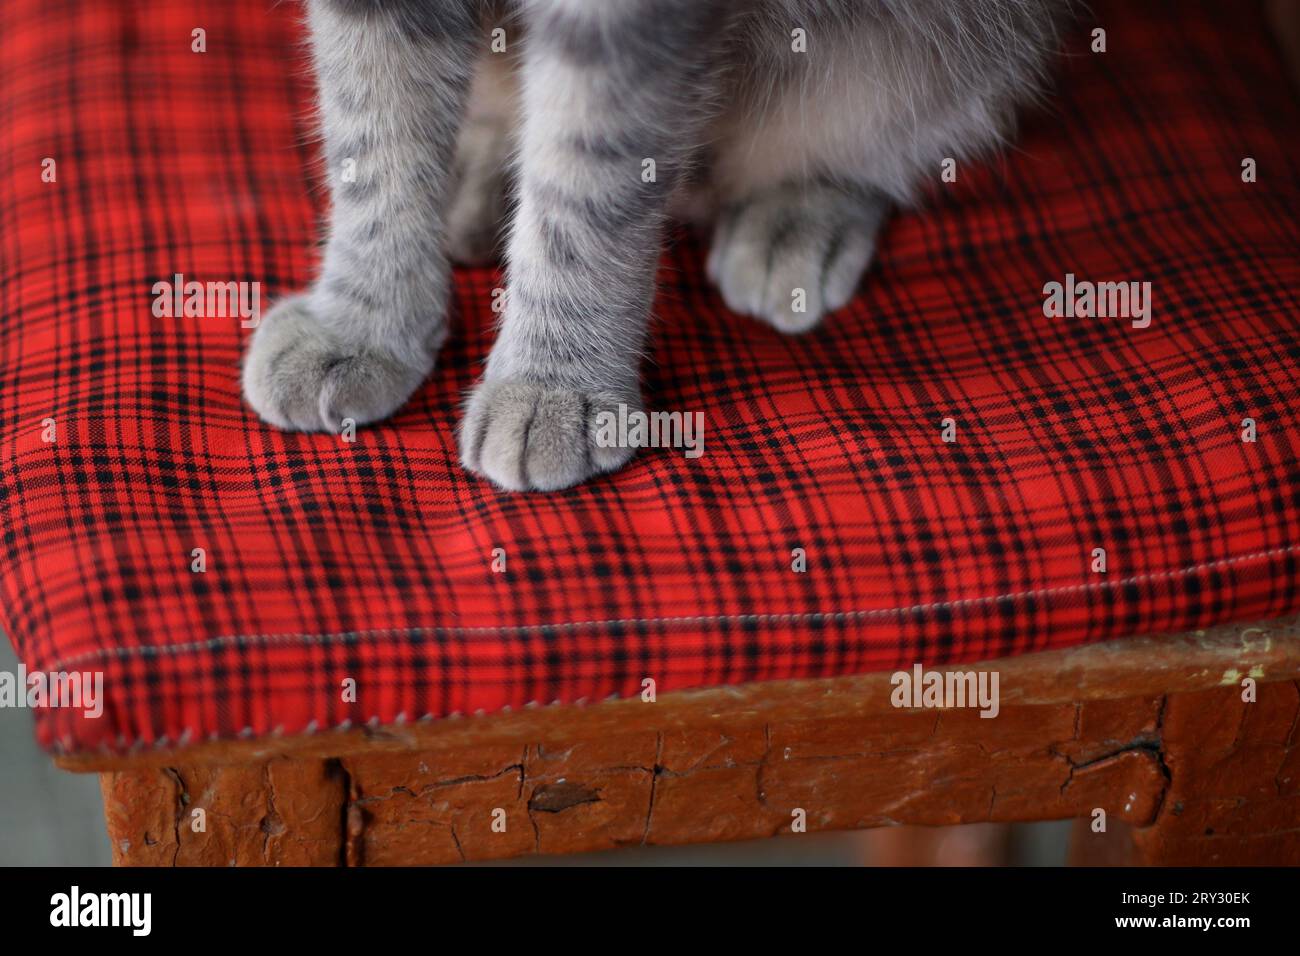 Fellpfoten einer grauen Katze aus der Nähe auf einem roten karierten Kissen Stockfoto